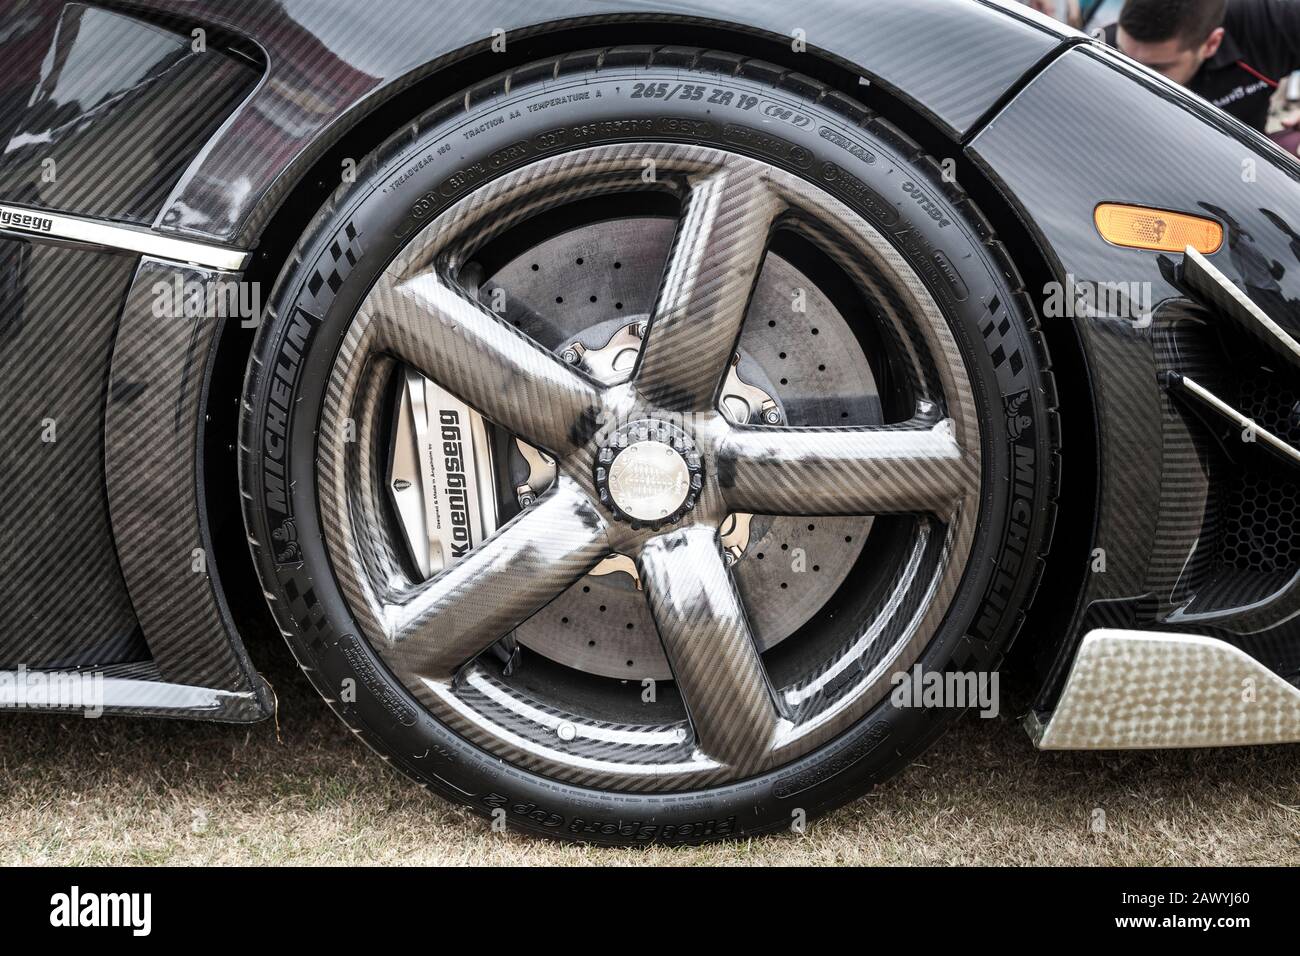 Primo piano della ruota anteriore in carbonio e del freno a disco di una supercar Koenigsegg al Goodwood Festival of Speed 2018. Foto Stock